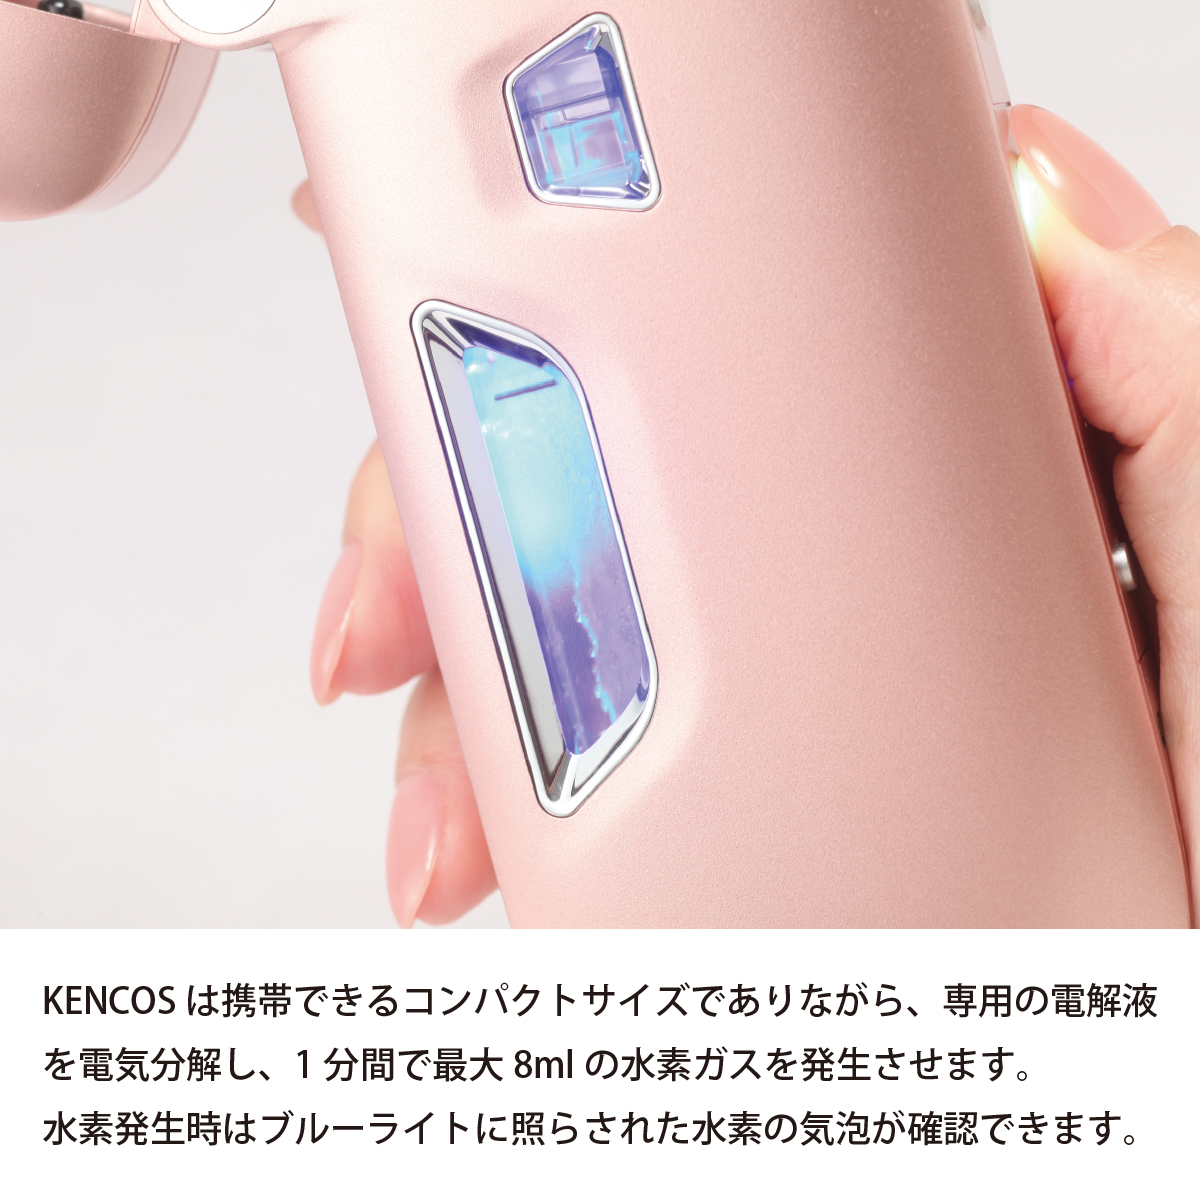 あの携帯できるポータブル水素ガス吸引具からKENCOS4が発売ｌ新機能が 